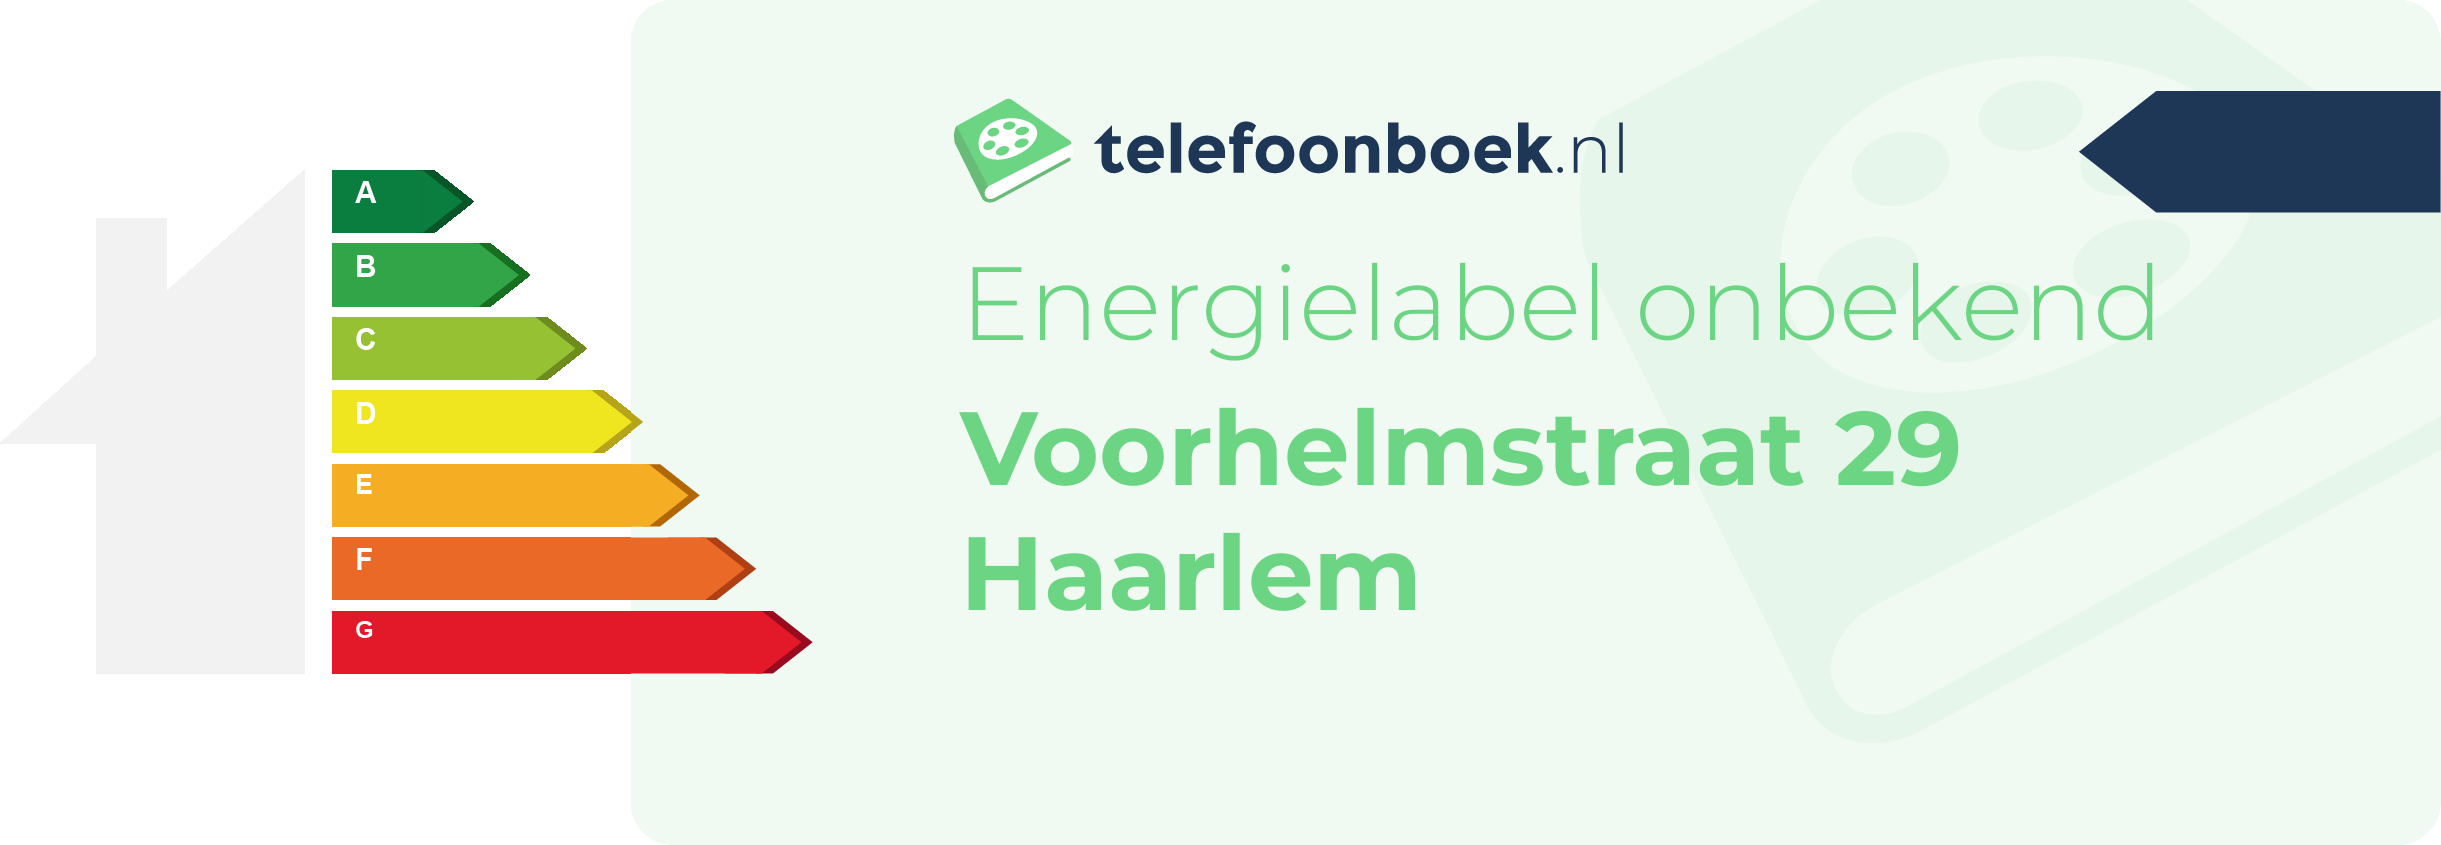 Energielabel Voorhelmstraat 29 Haarlem